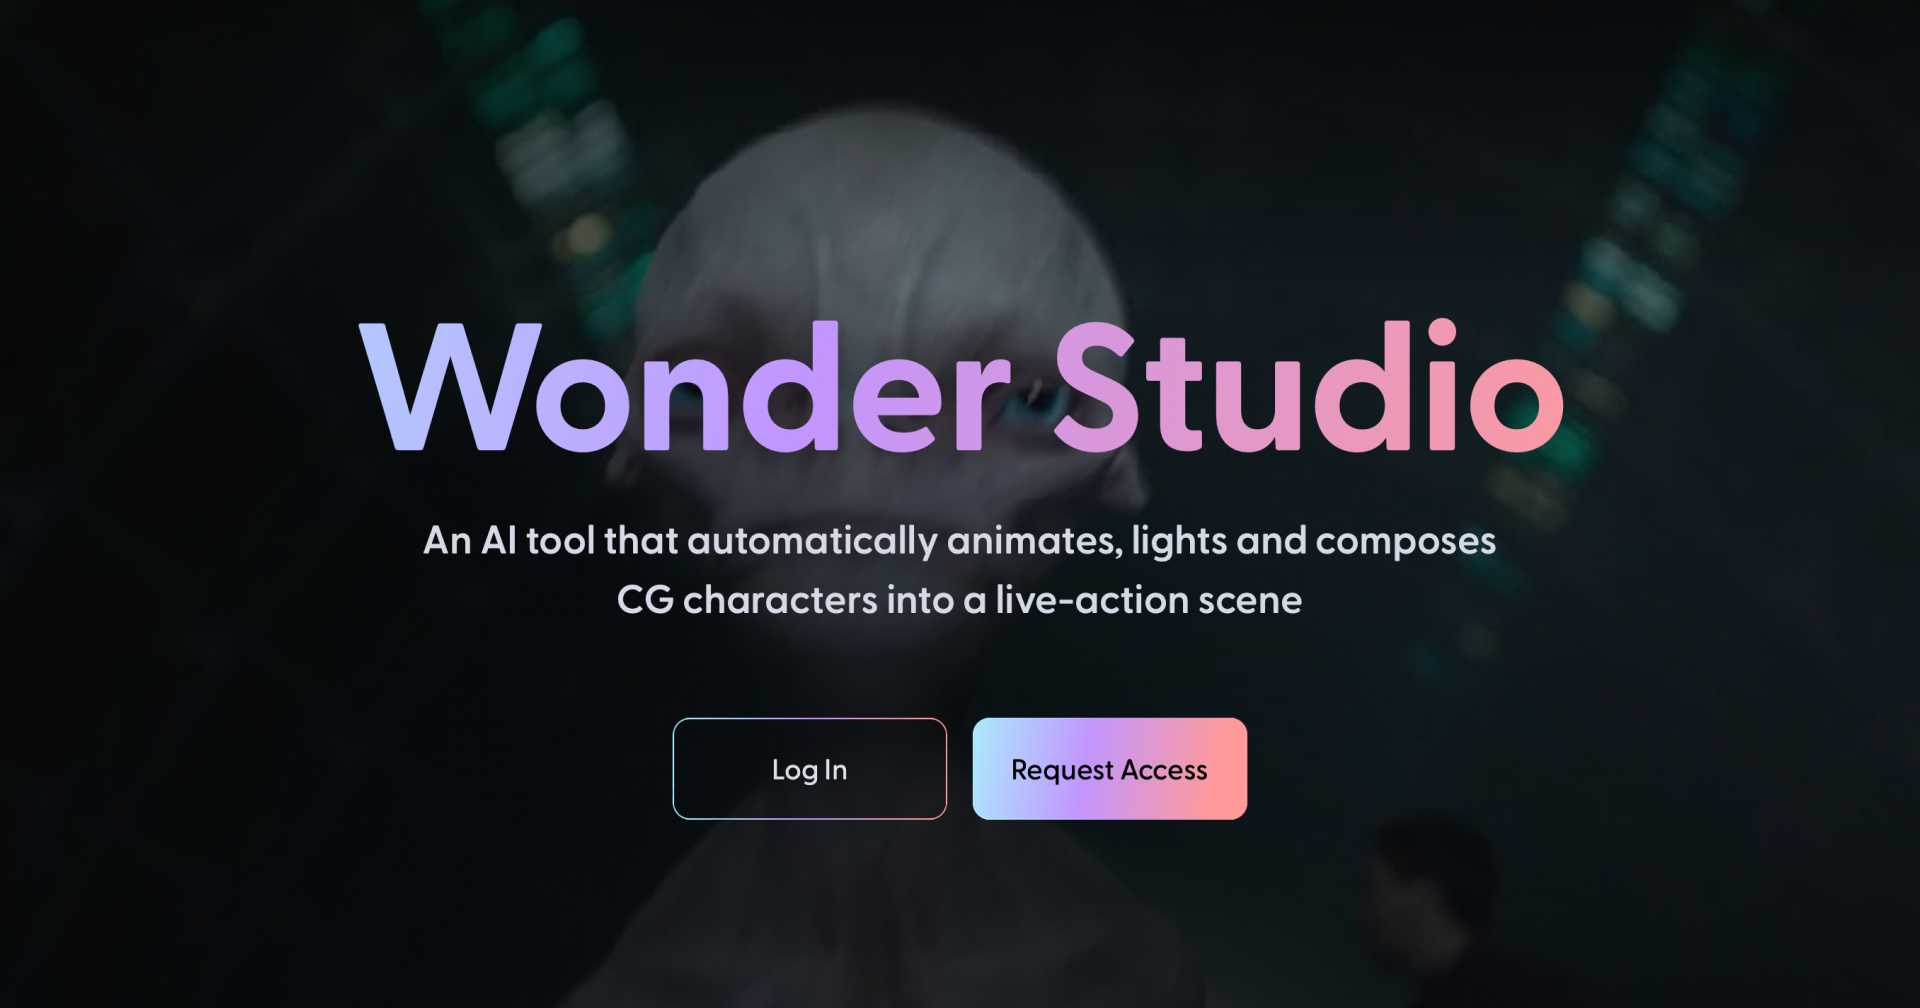 Wonder Studio เครื่องมือ AI ใส่โมเดล 3 มิติแทนนักแสดงในวิดีโออัตโนมัติ สะเทือนวงการ VFX!